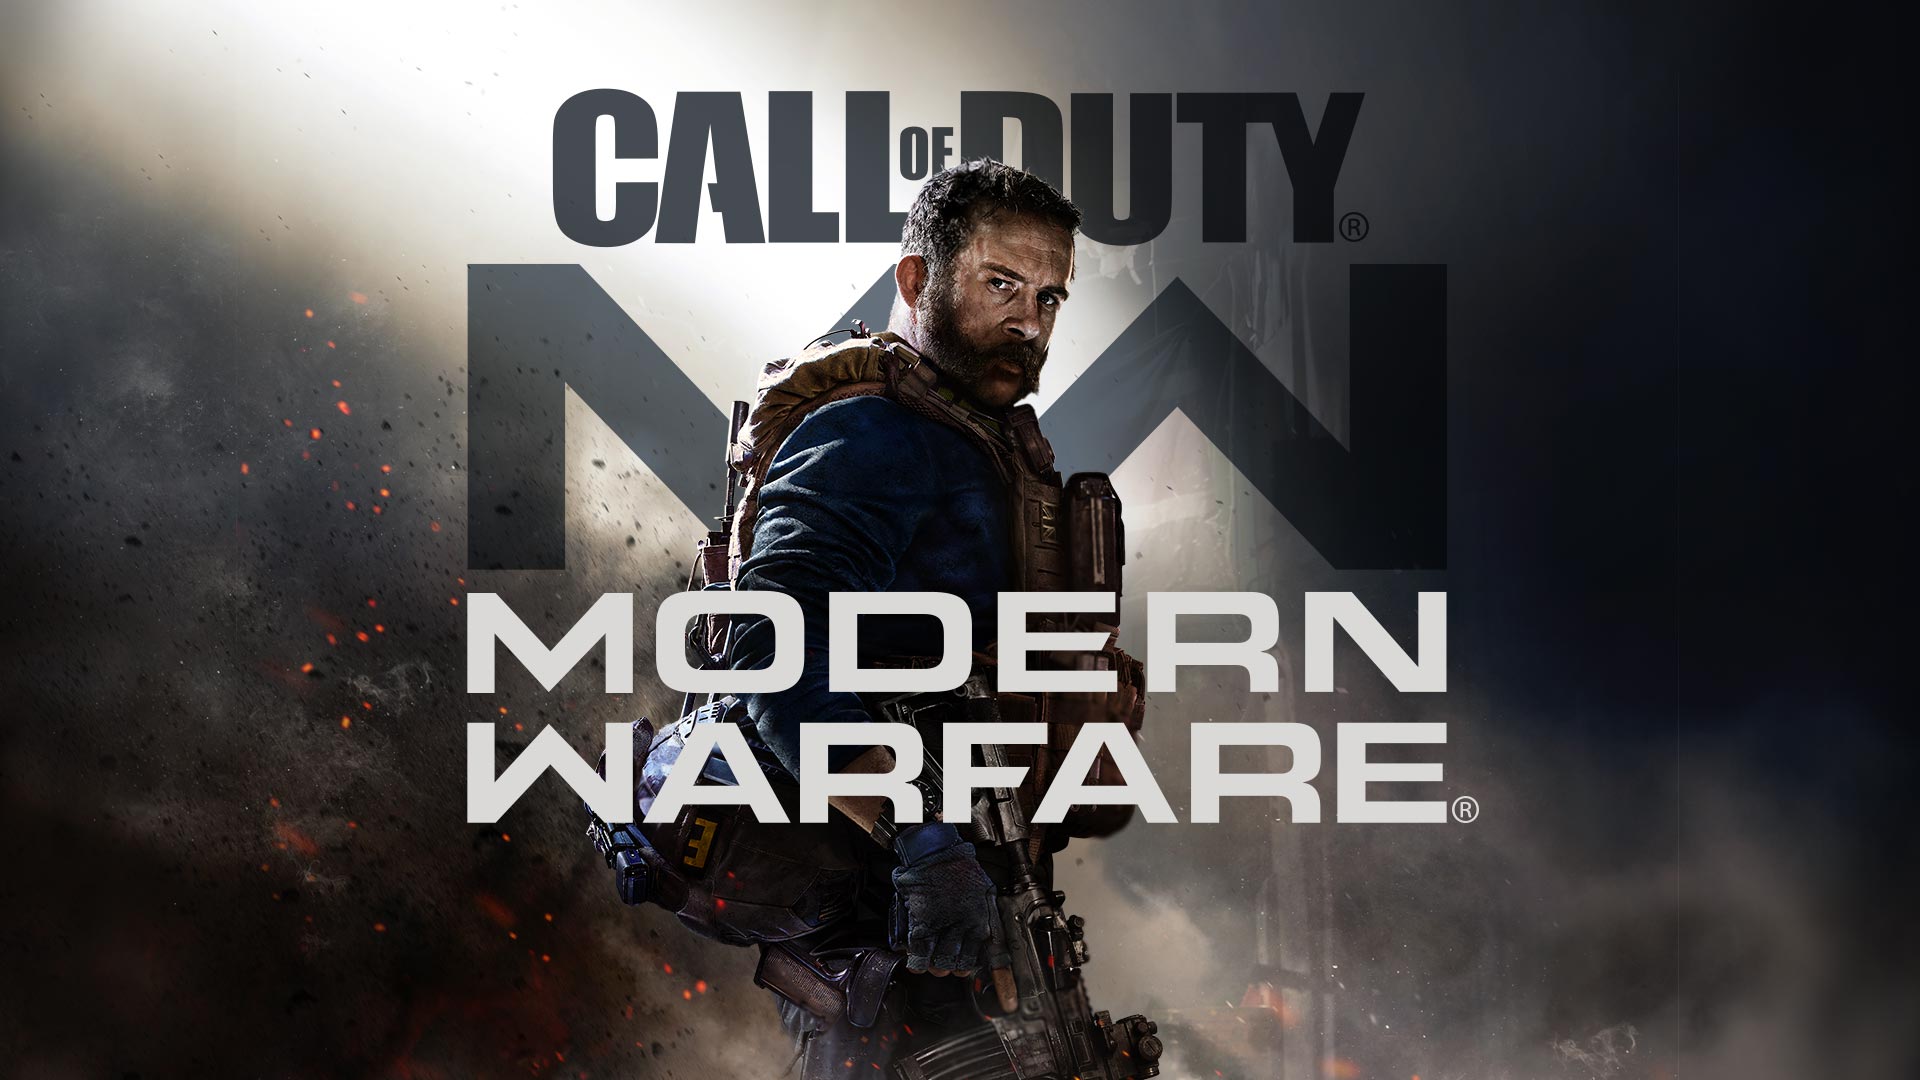 Call Of Duty: Modern Warfare 2019 RU/VPN (Battle.net)